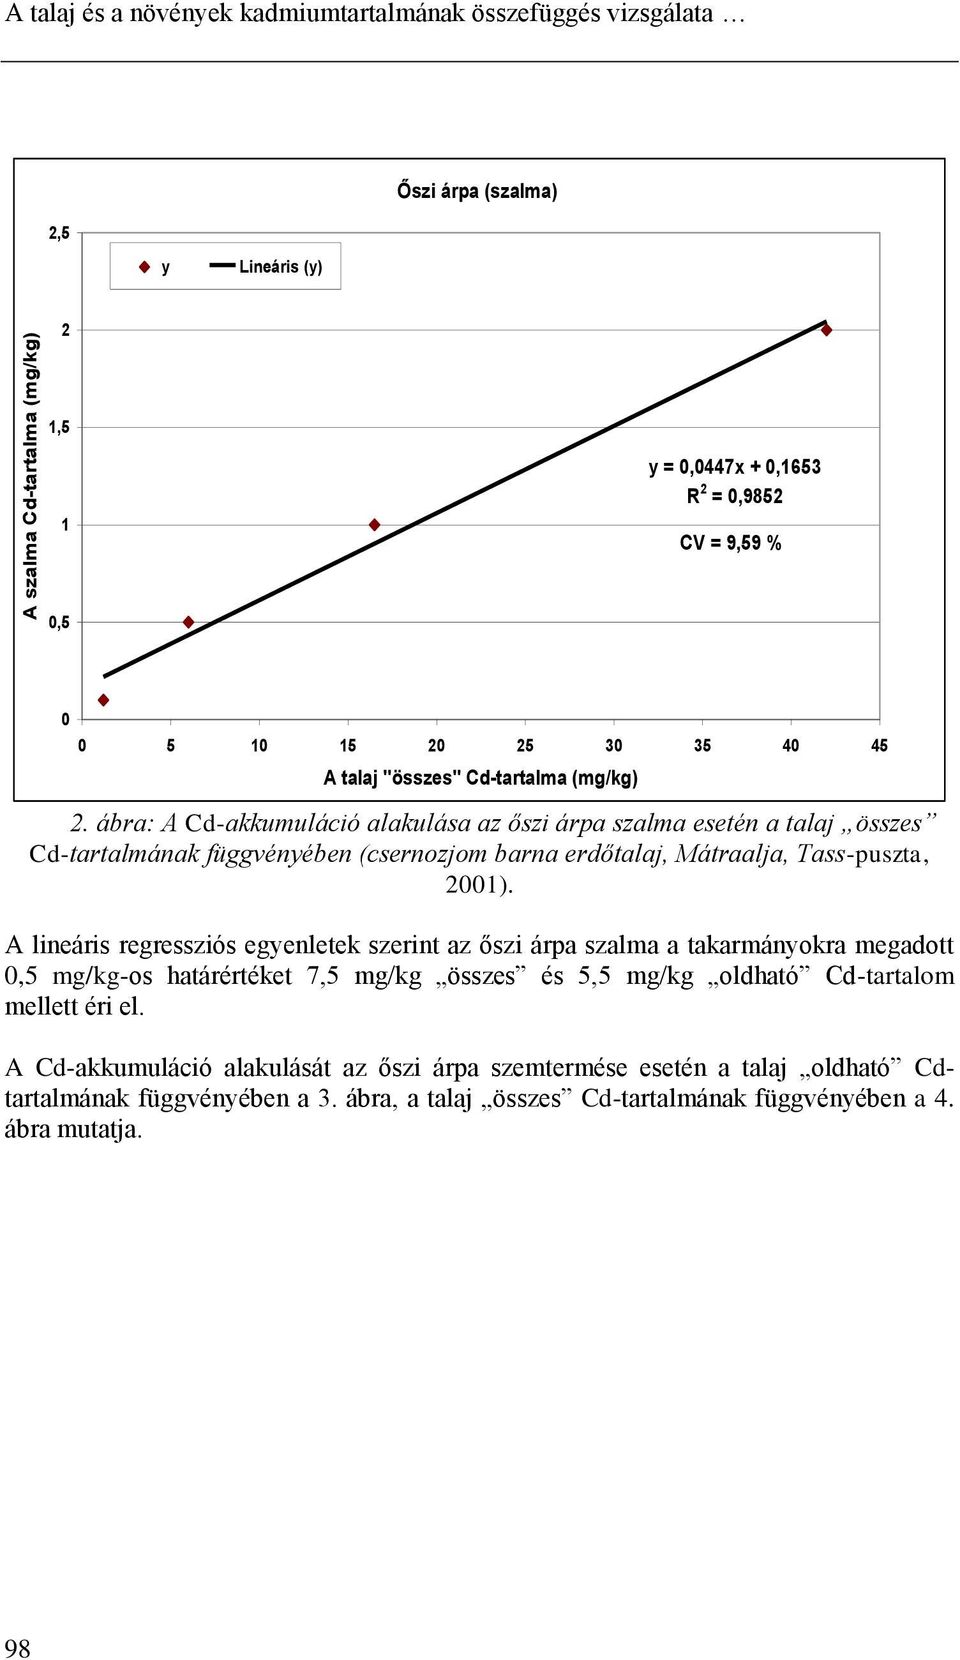 ábra: A Cd-akkumuláció alakulása az őszi árpa szalma esetén a talaj összes Cd-tartalmának függvényében (csernozjom barna erdőtalaj, Mátraalja, Tass-puszta, 2001).